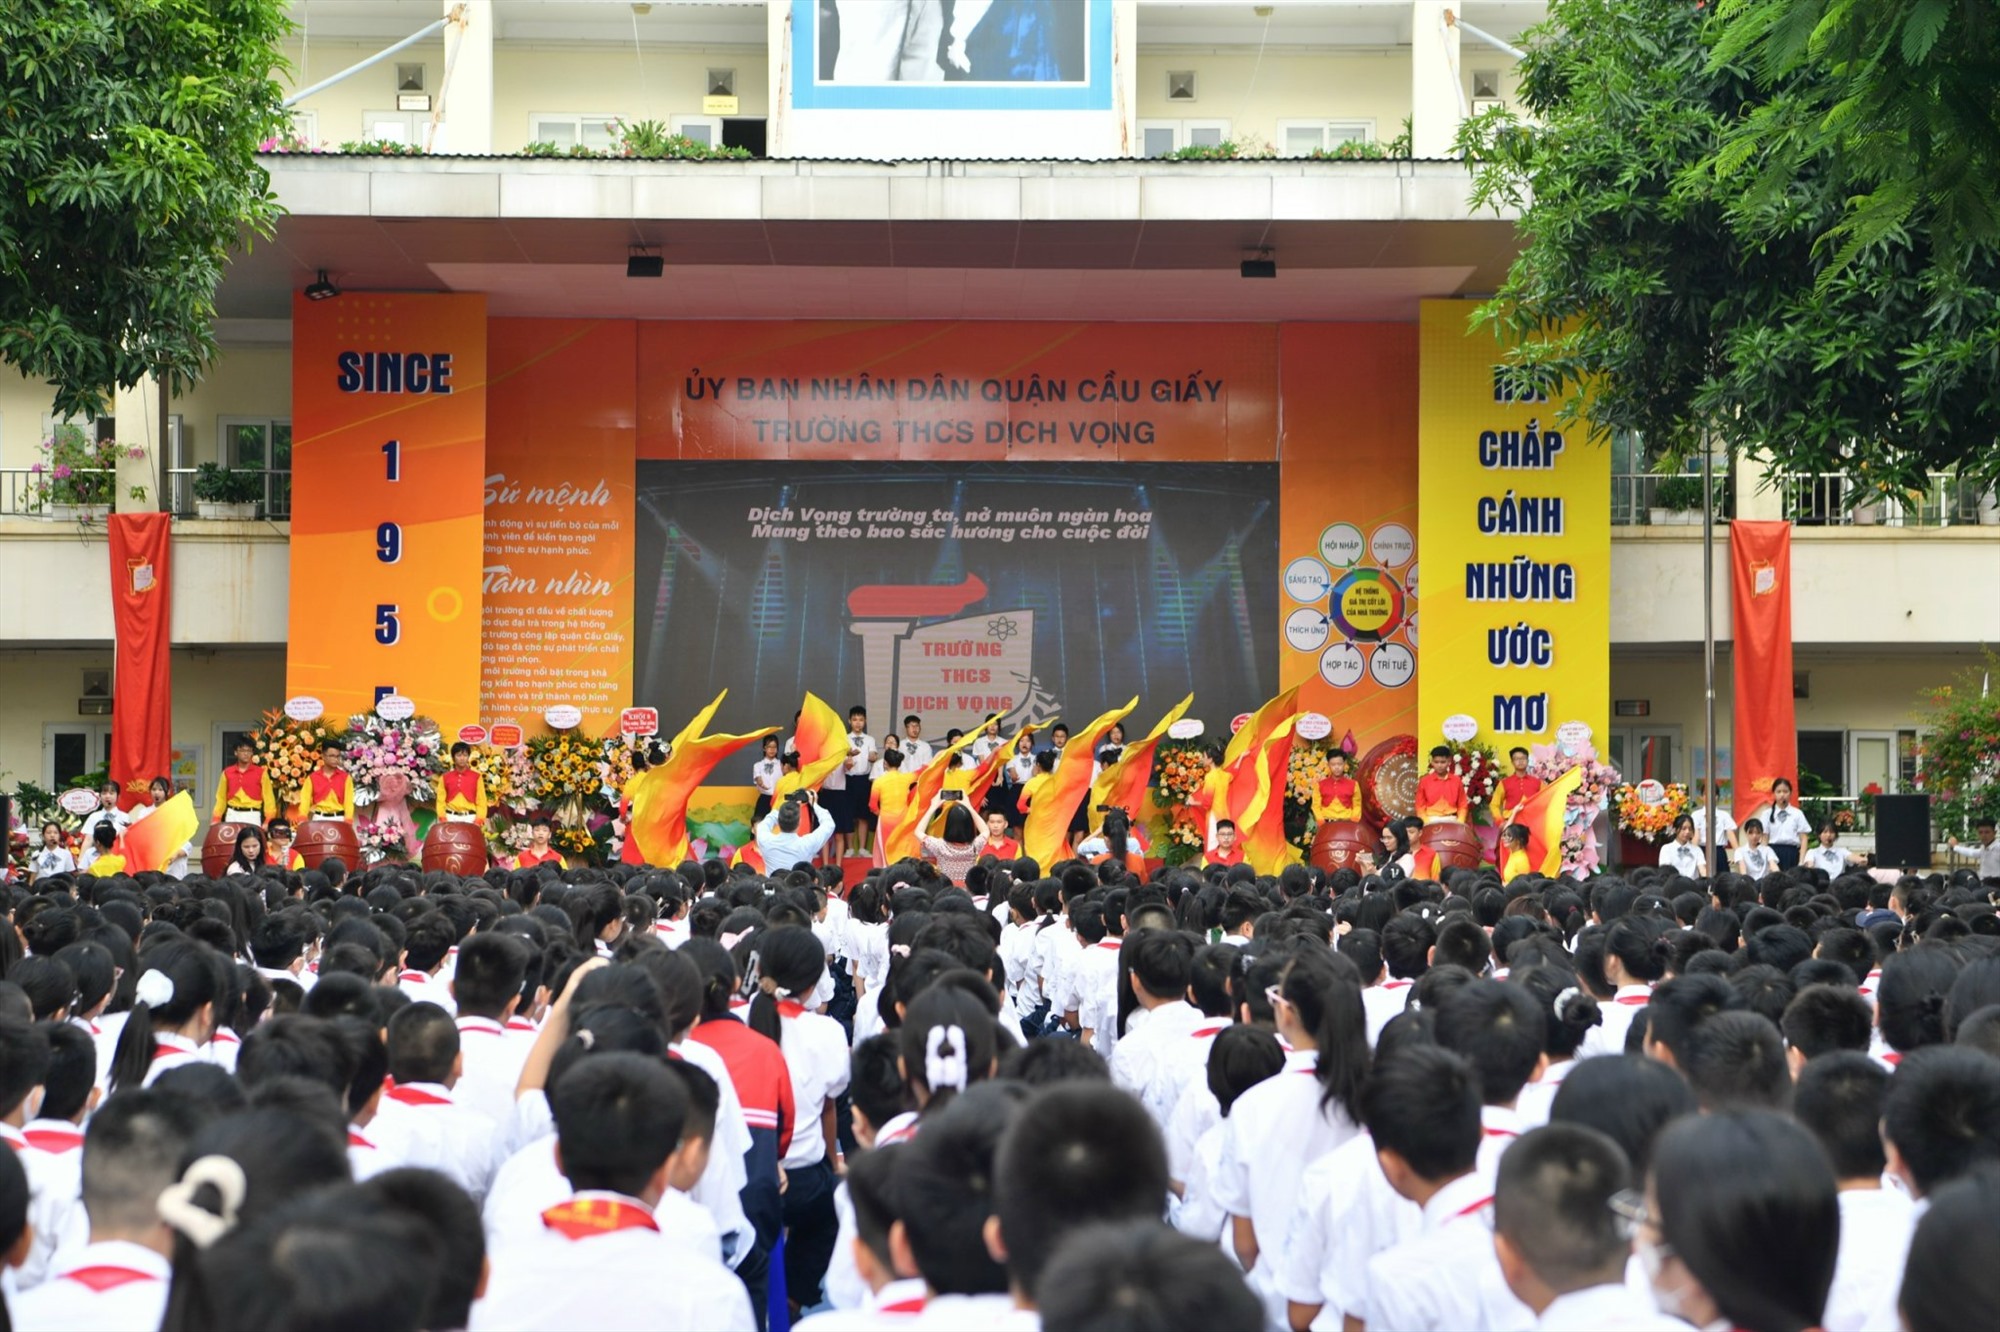 Lễ khai giảng của 2500 học sinh và thày cô trường THCS Dịch Vọng (Cầu Giấy). Ảnh: Hải Nguyễn